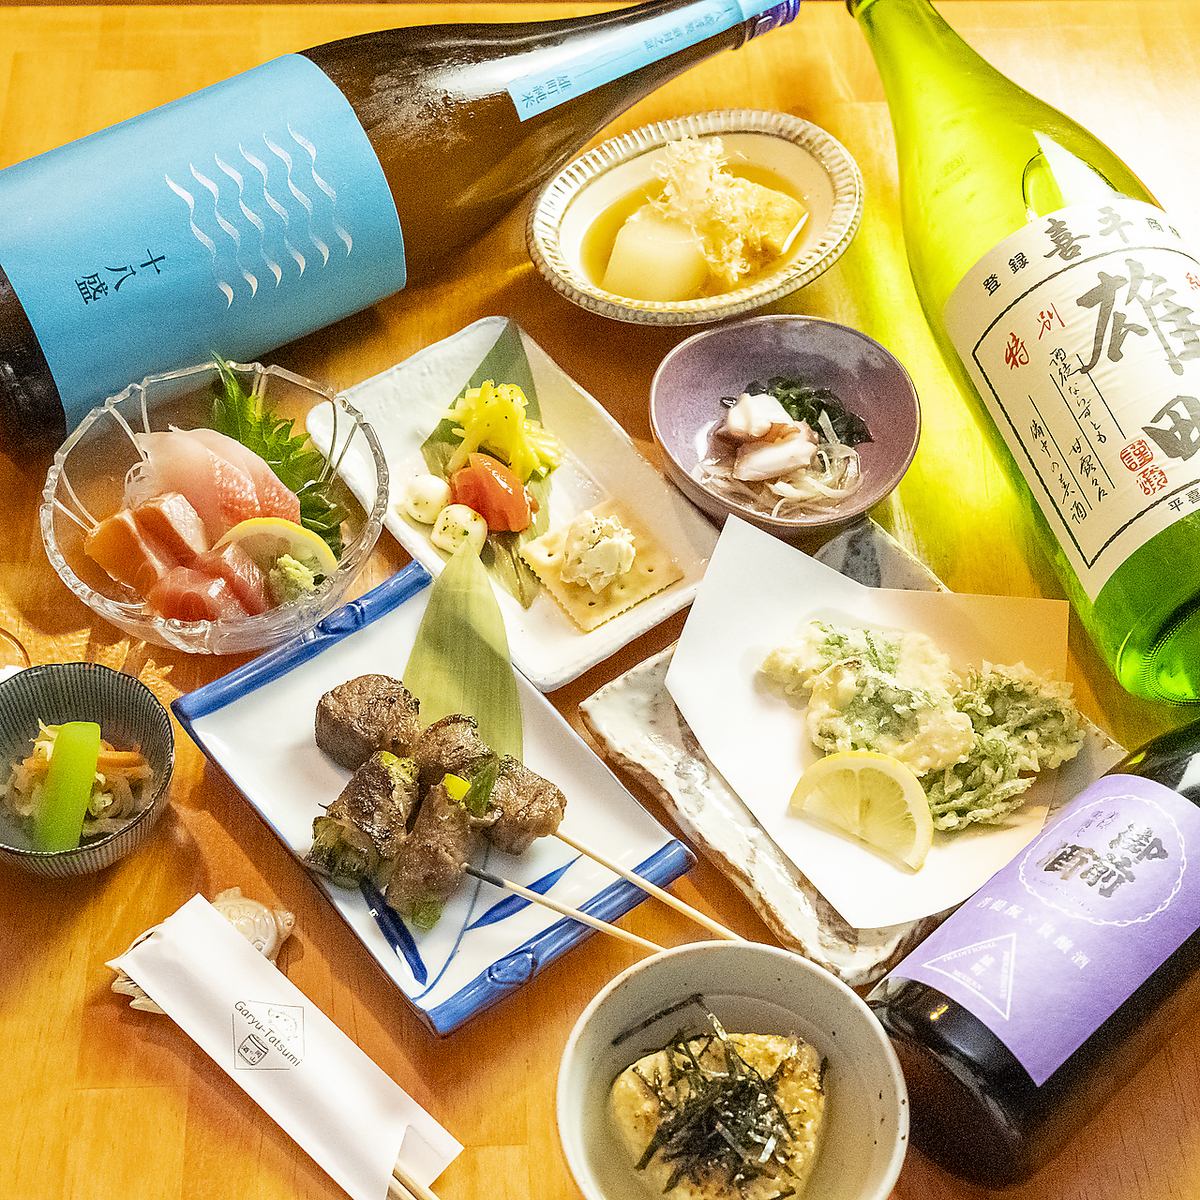 您可以品尝冈山县精心制作的菜肴和县内酿酒厂的当地酒。